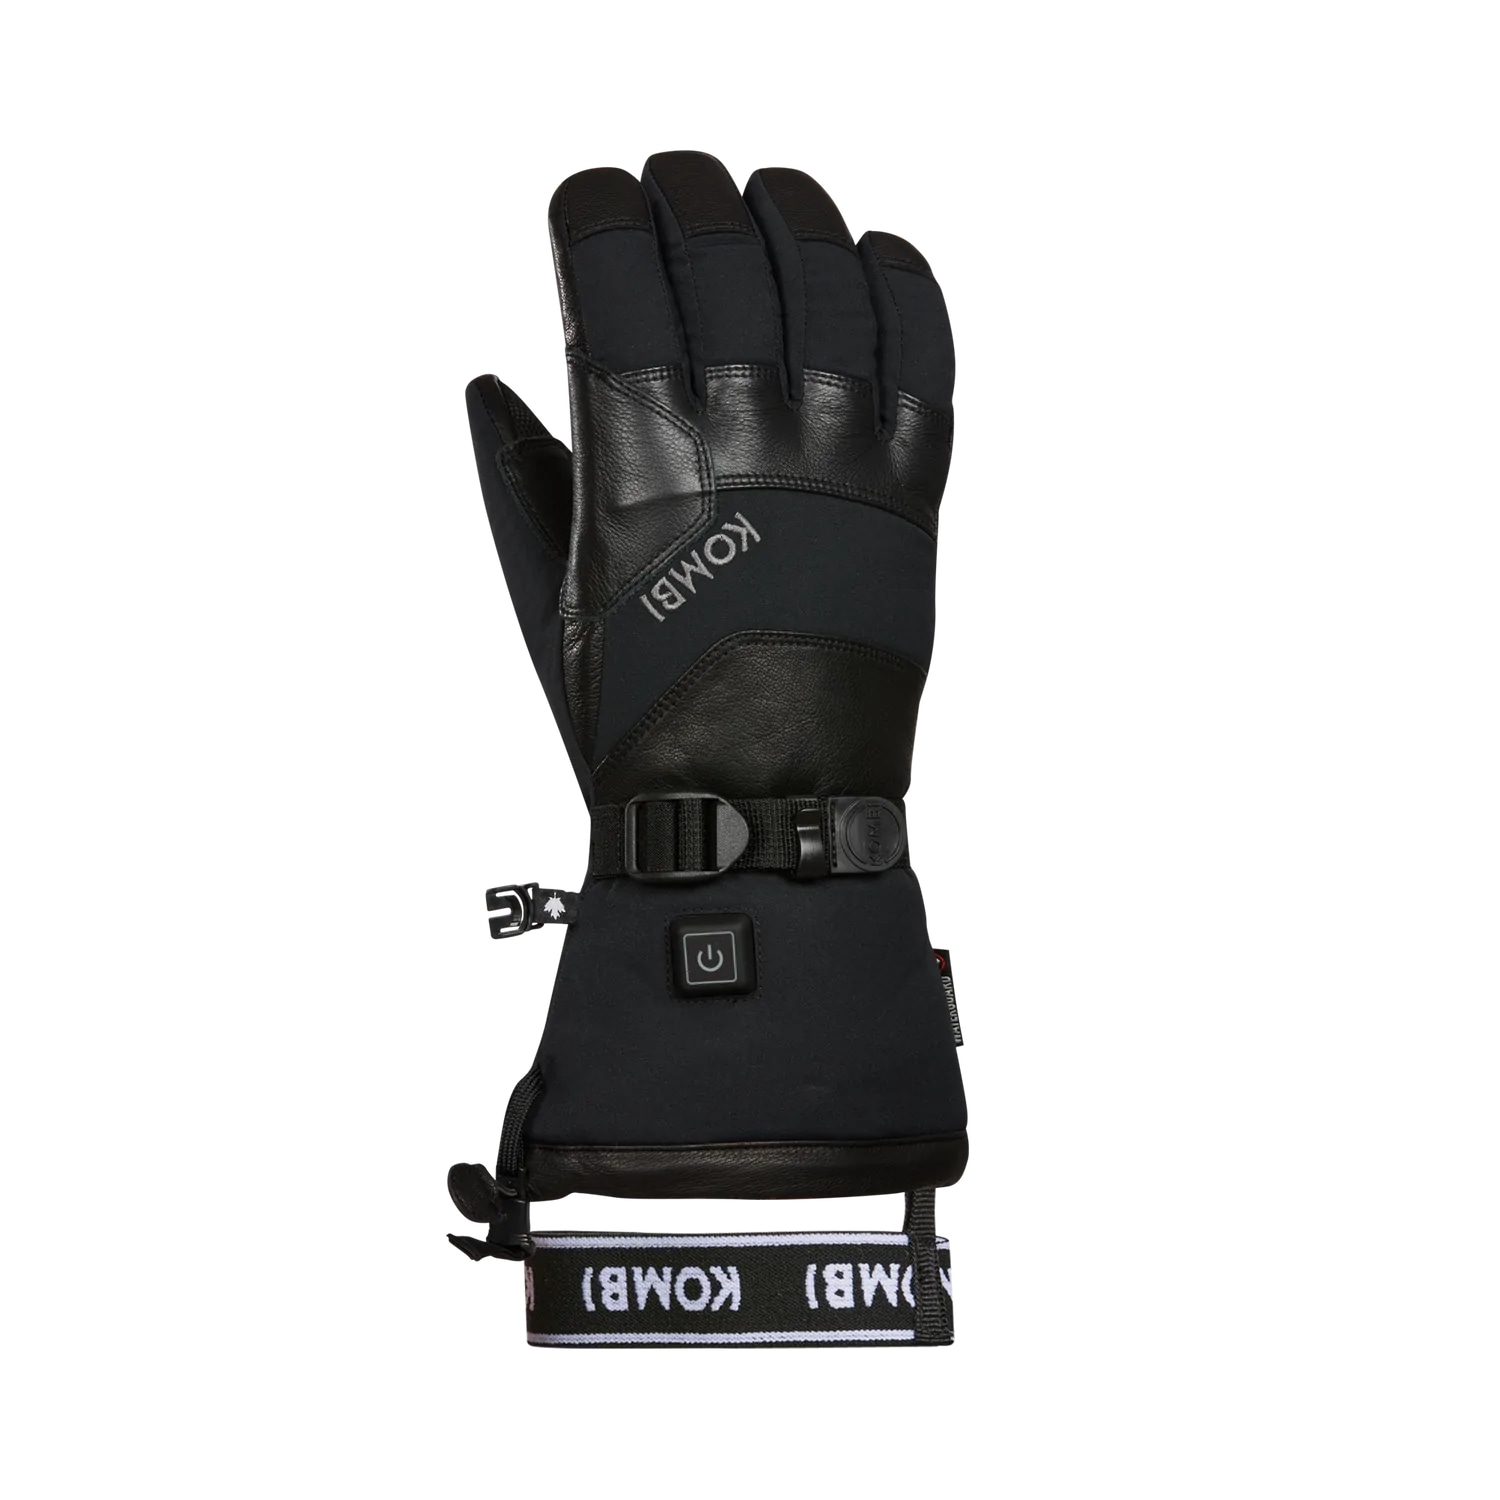 Unisex Warm It Up Heated Gloves